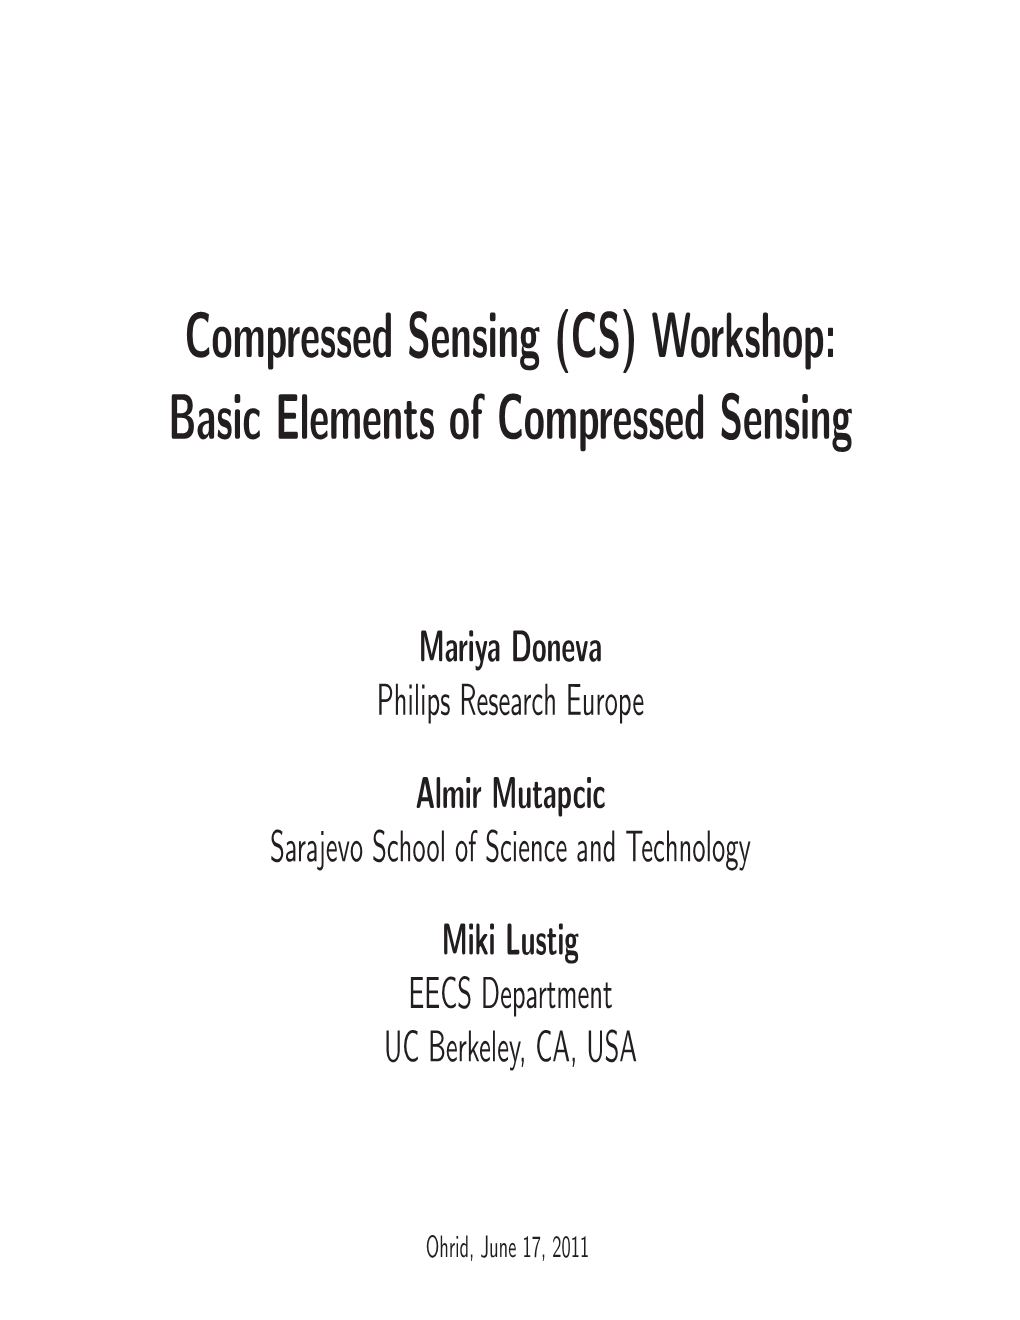 (CS) Workshop: Basic Elements of Compressed Sensing